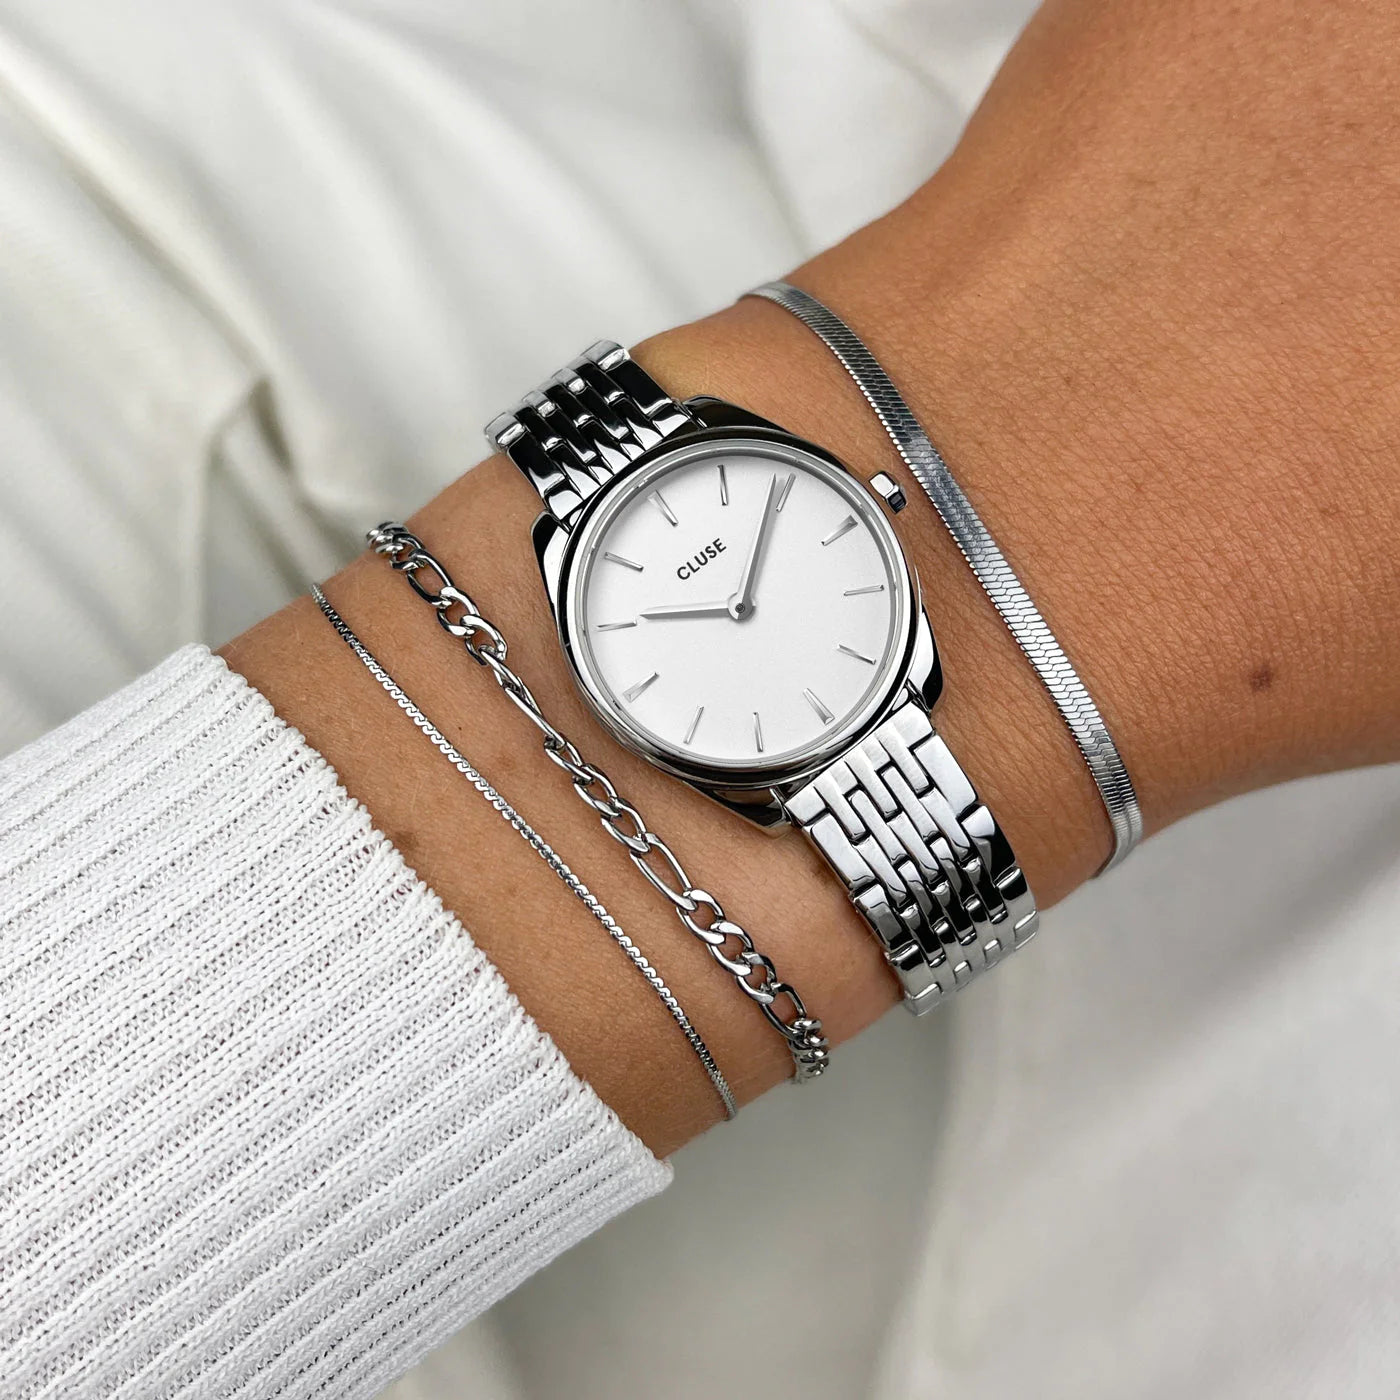 Frau trägt die Cluse Uhr "Feroce Mini" mit silberfarbenem Gehäuse und weißem Zifferblatt am Handgelenk und kombiniert silberne Armbänder damit